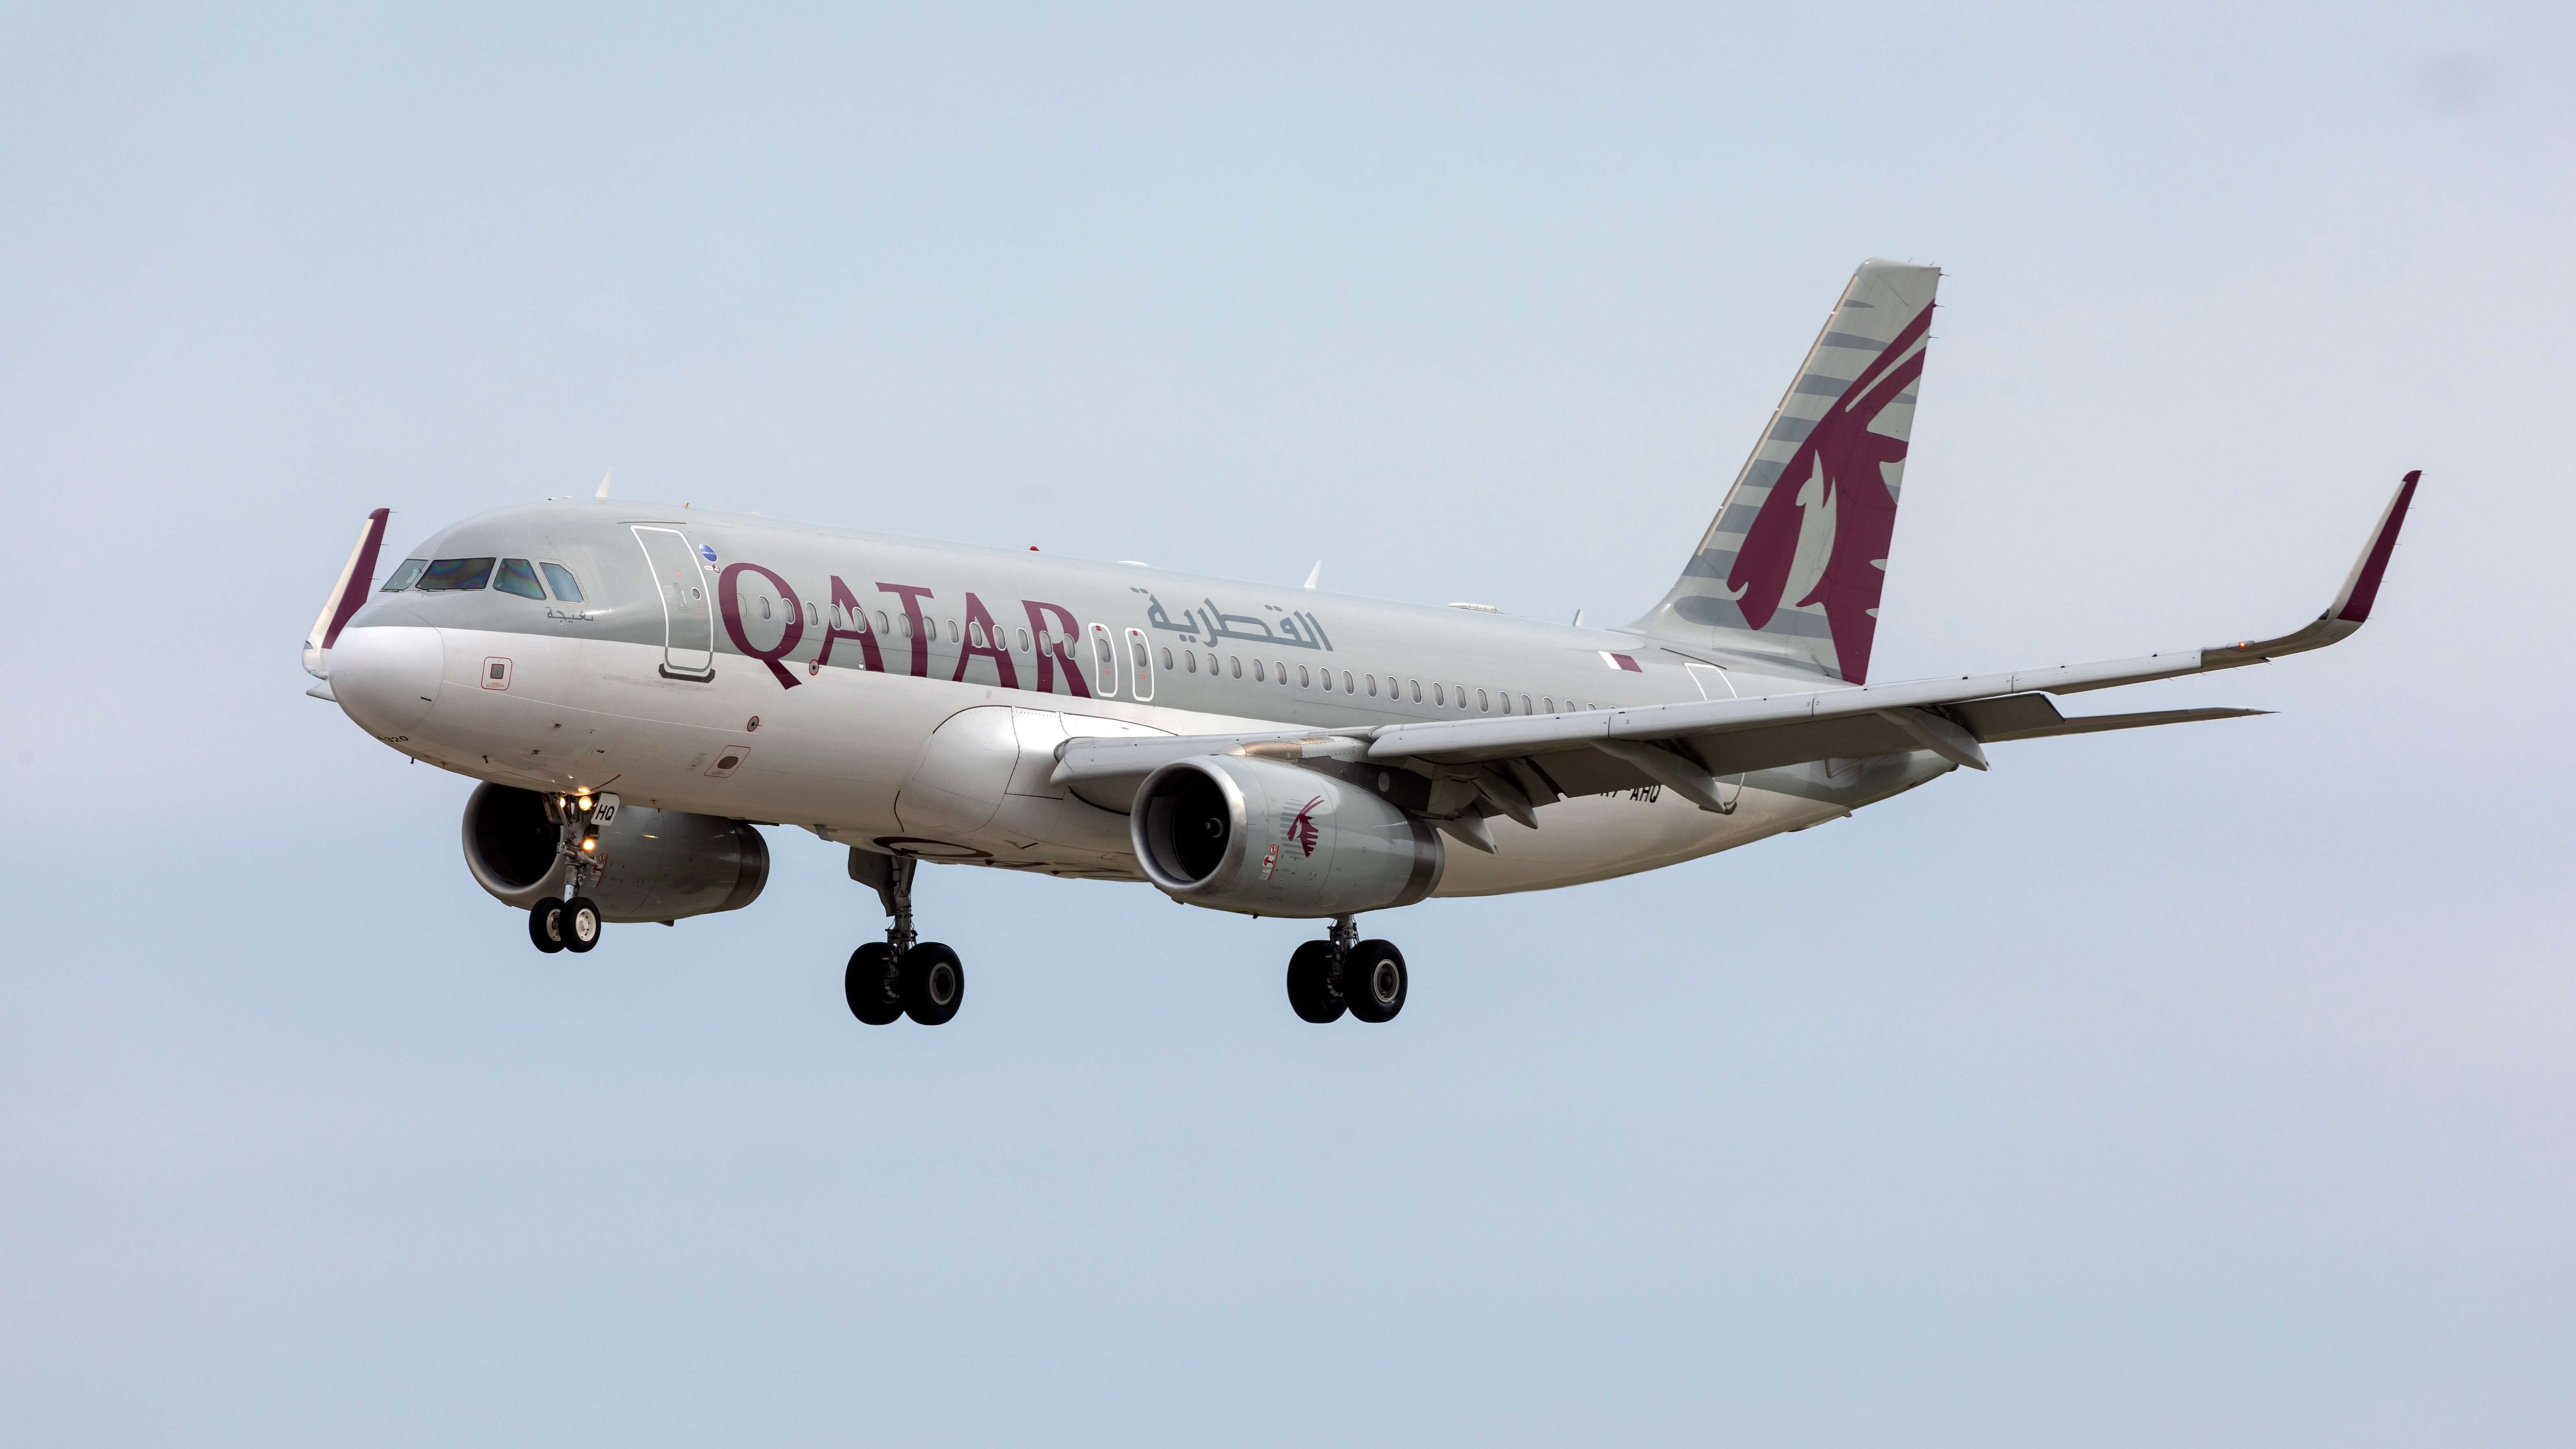 Qatar Airways Airbus A320